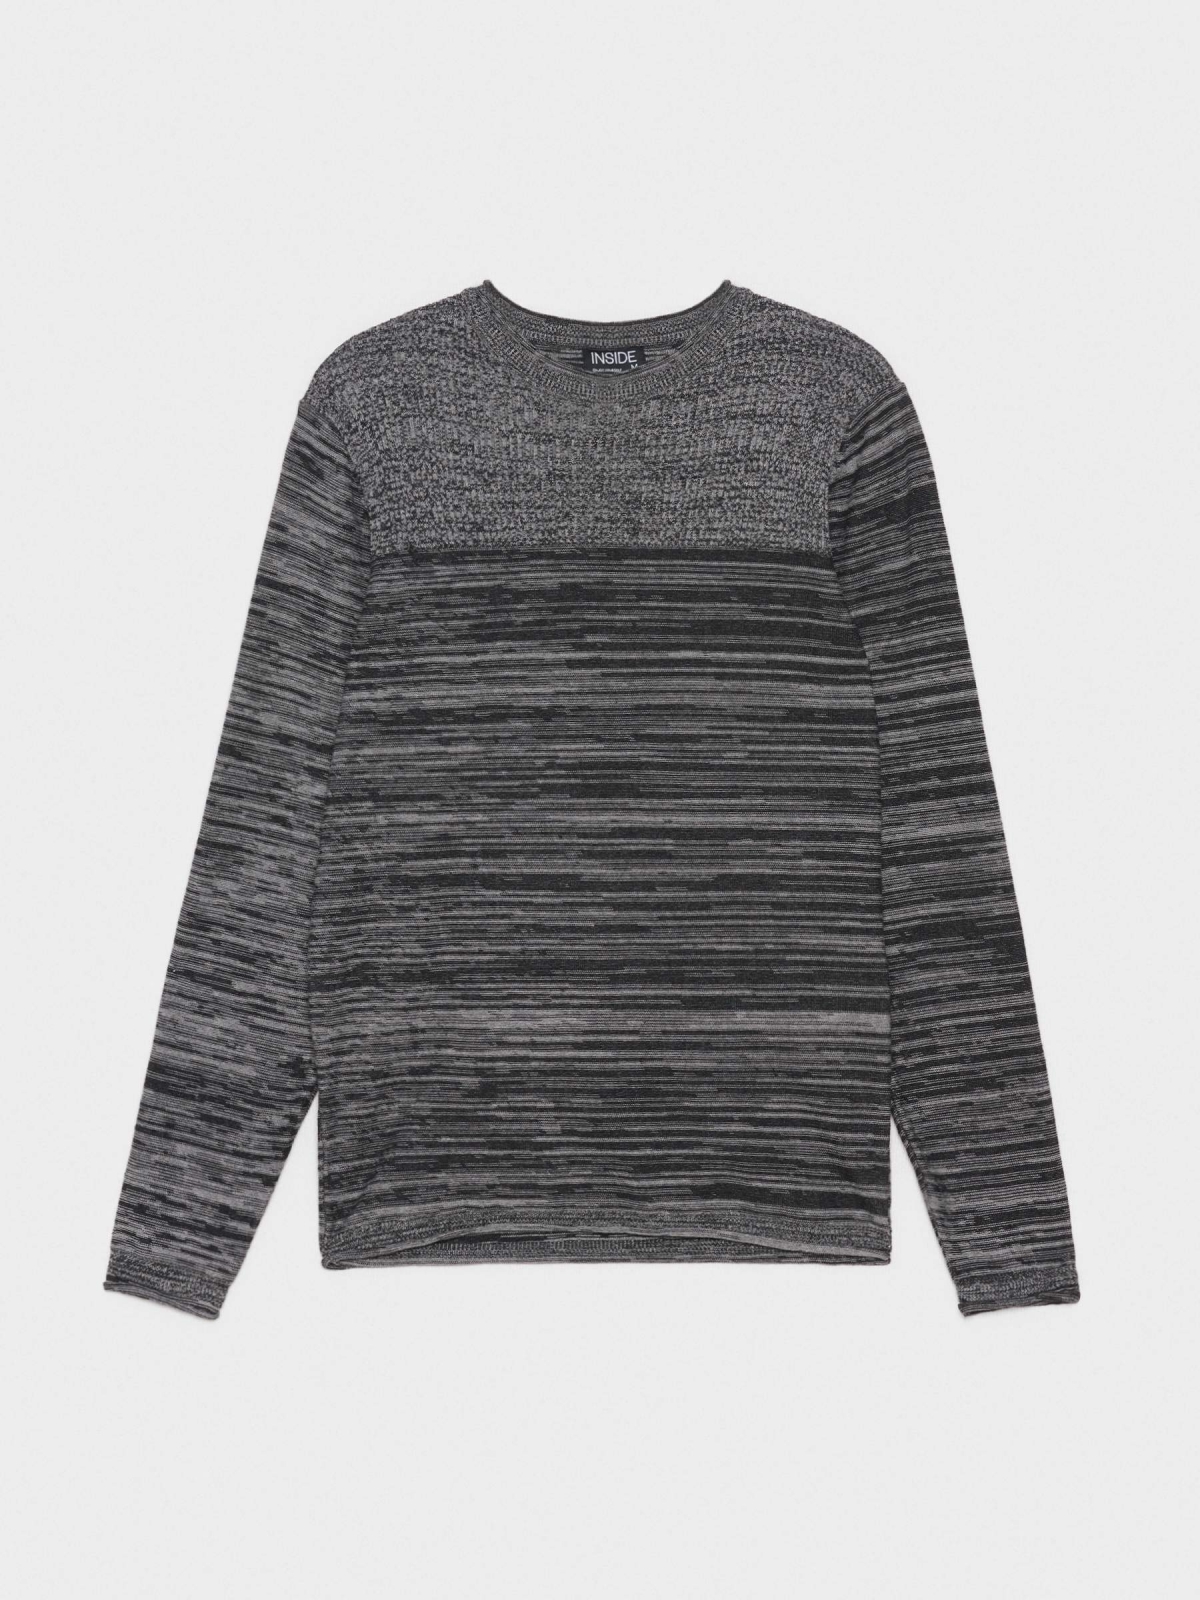  Suéter combinado com nervuras cinza escuro